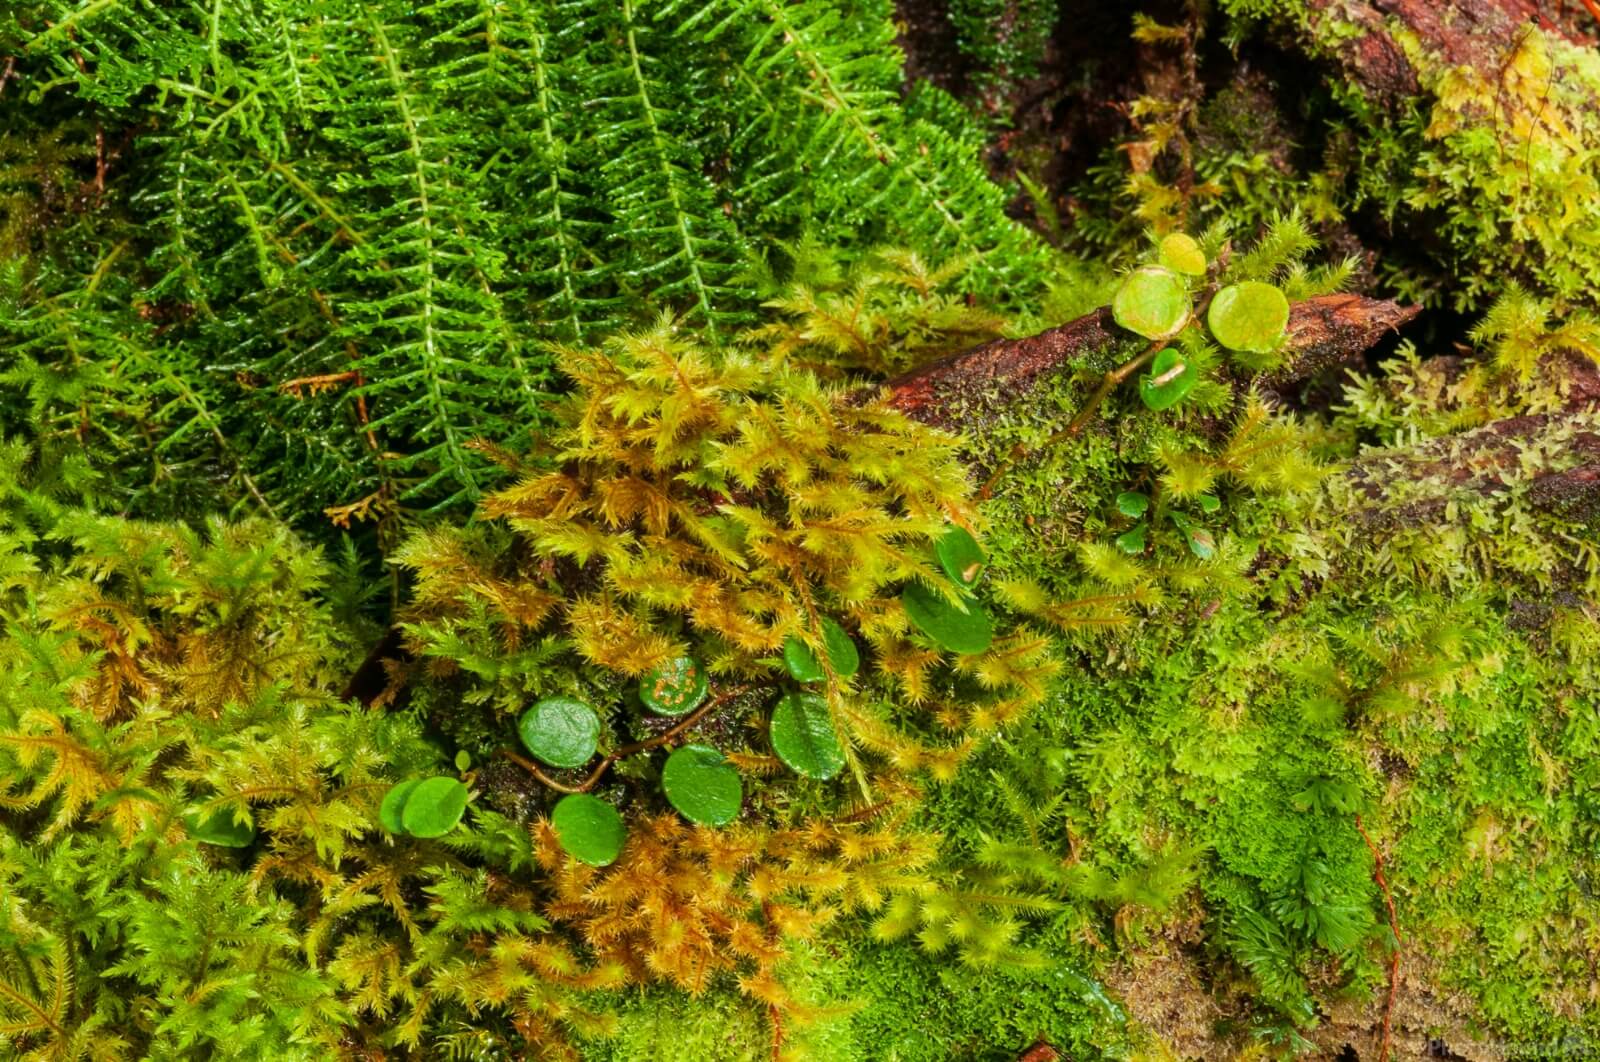 Image of Mt Kinabalu Walks and Botanical Garden by Luka Esenko